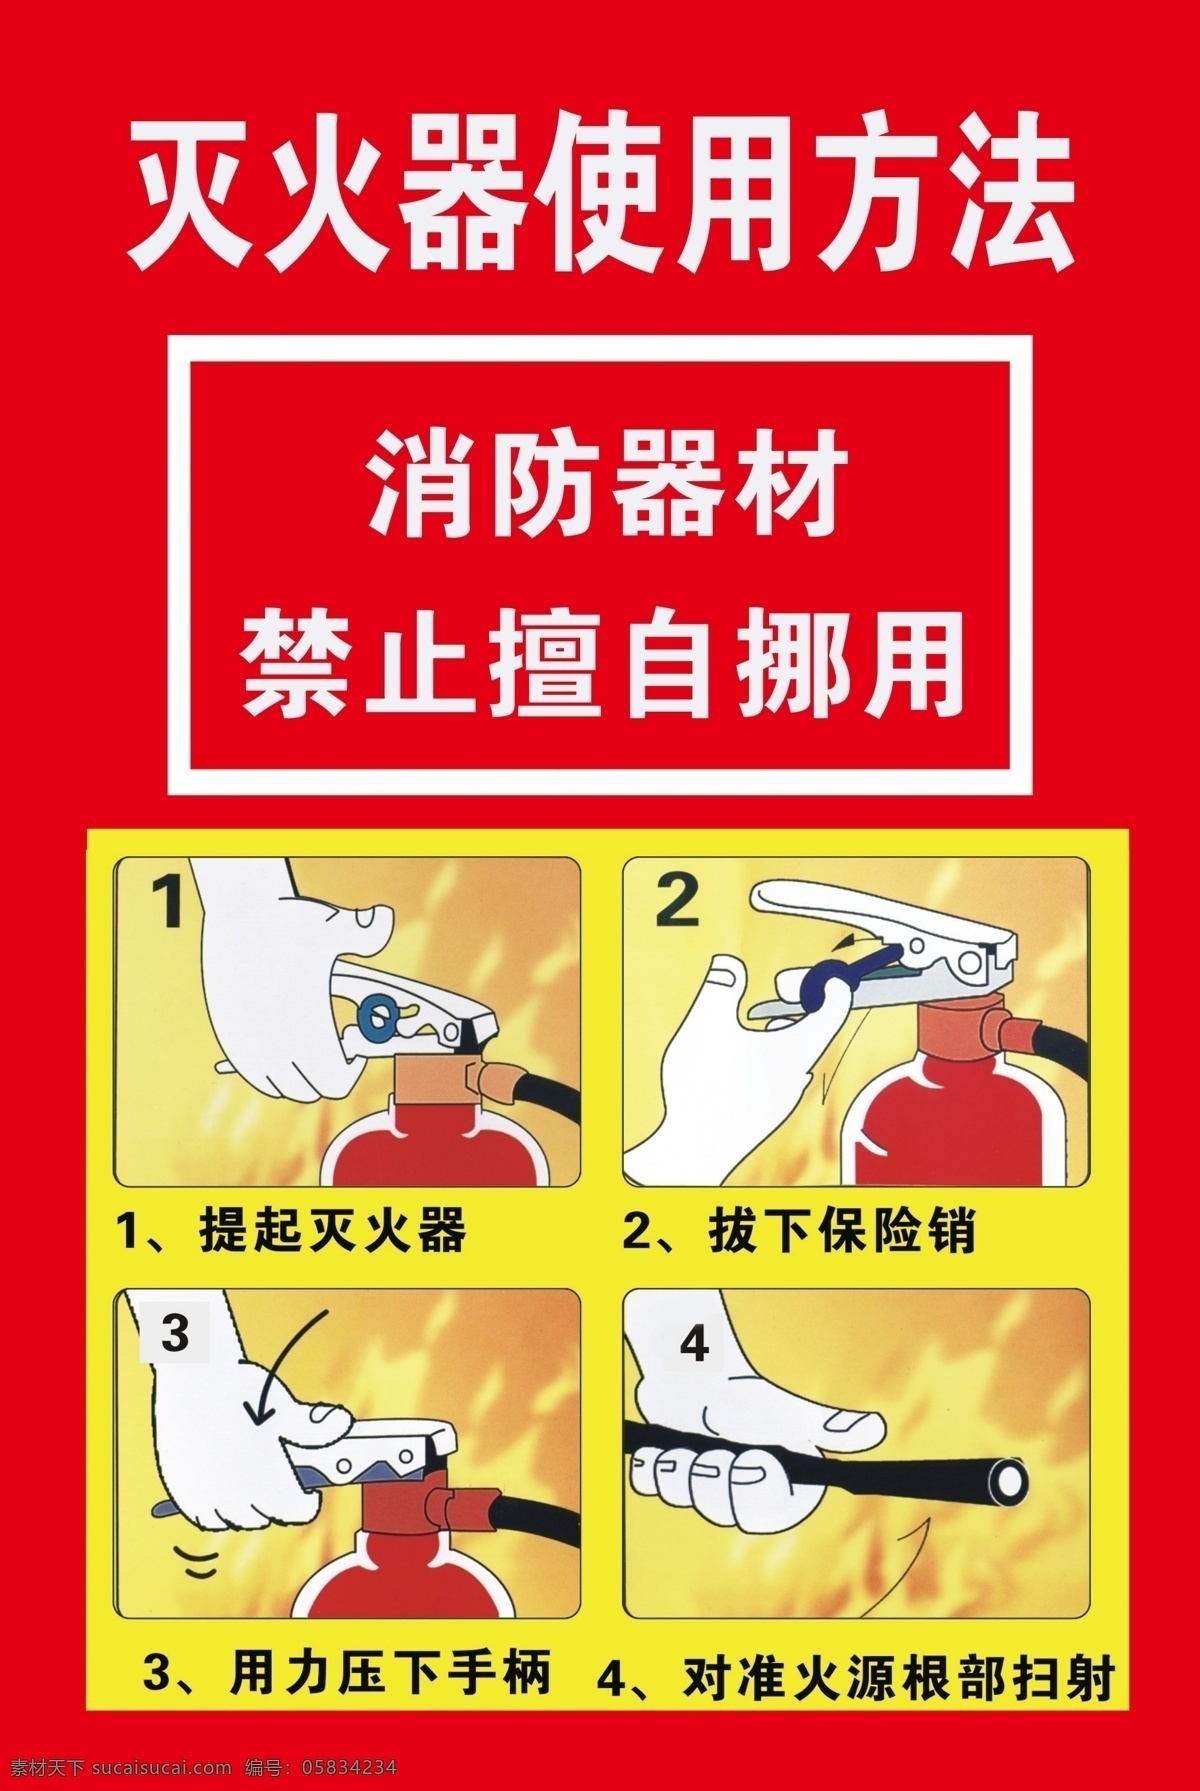 灭火器 使用方法 灭火器使用 方法 红色背景 消防器材 禁止挪用 安全标语 卡通手 器材 海报